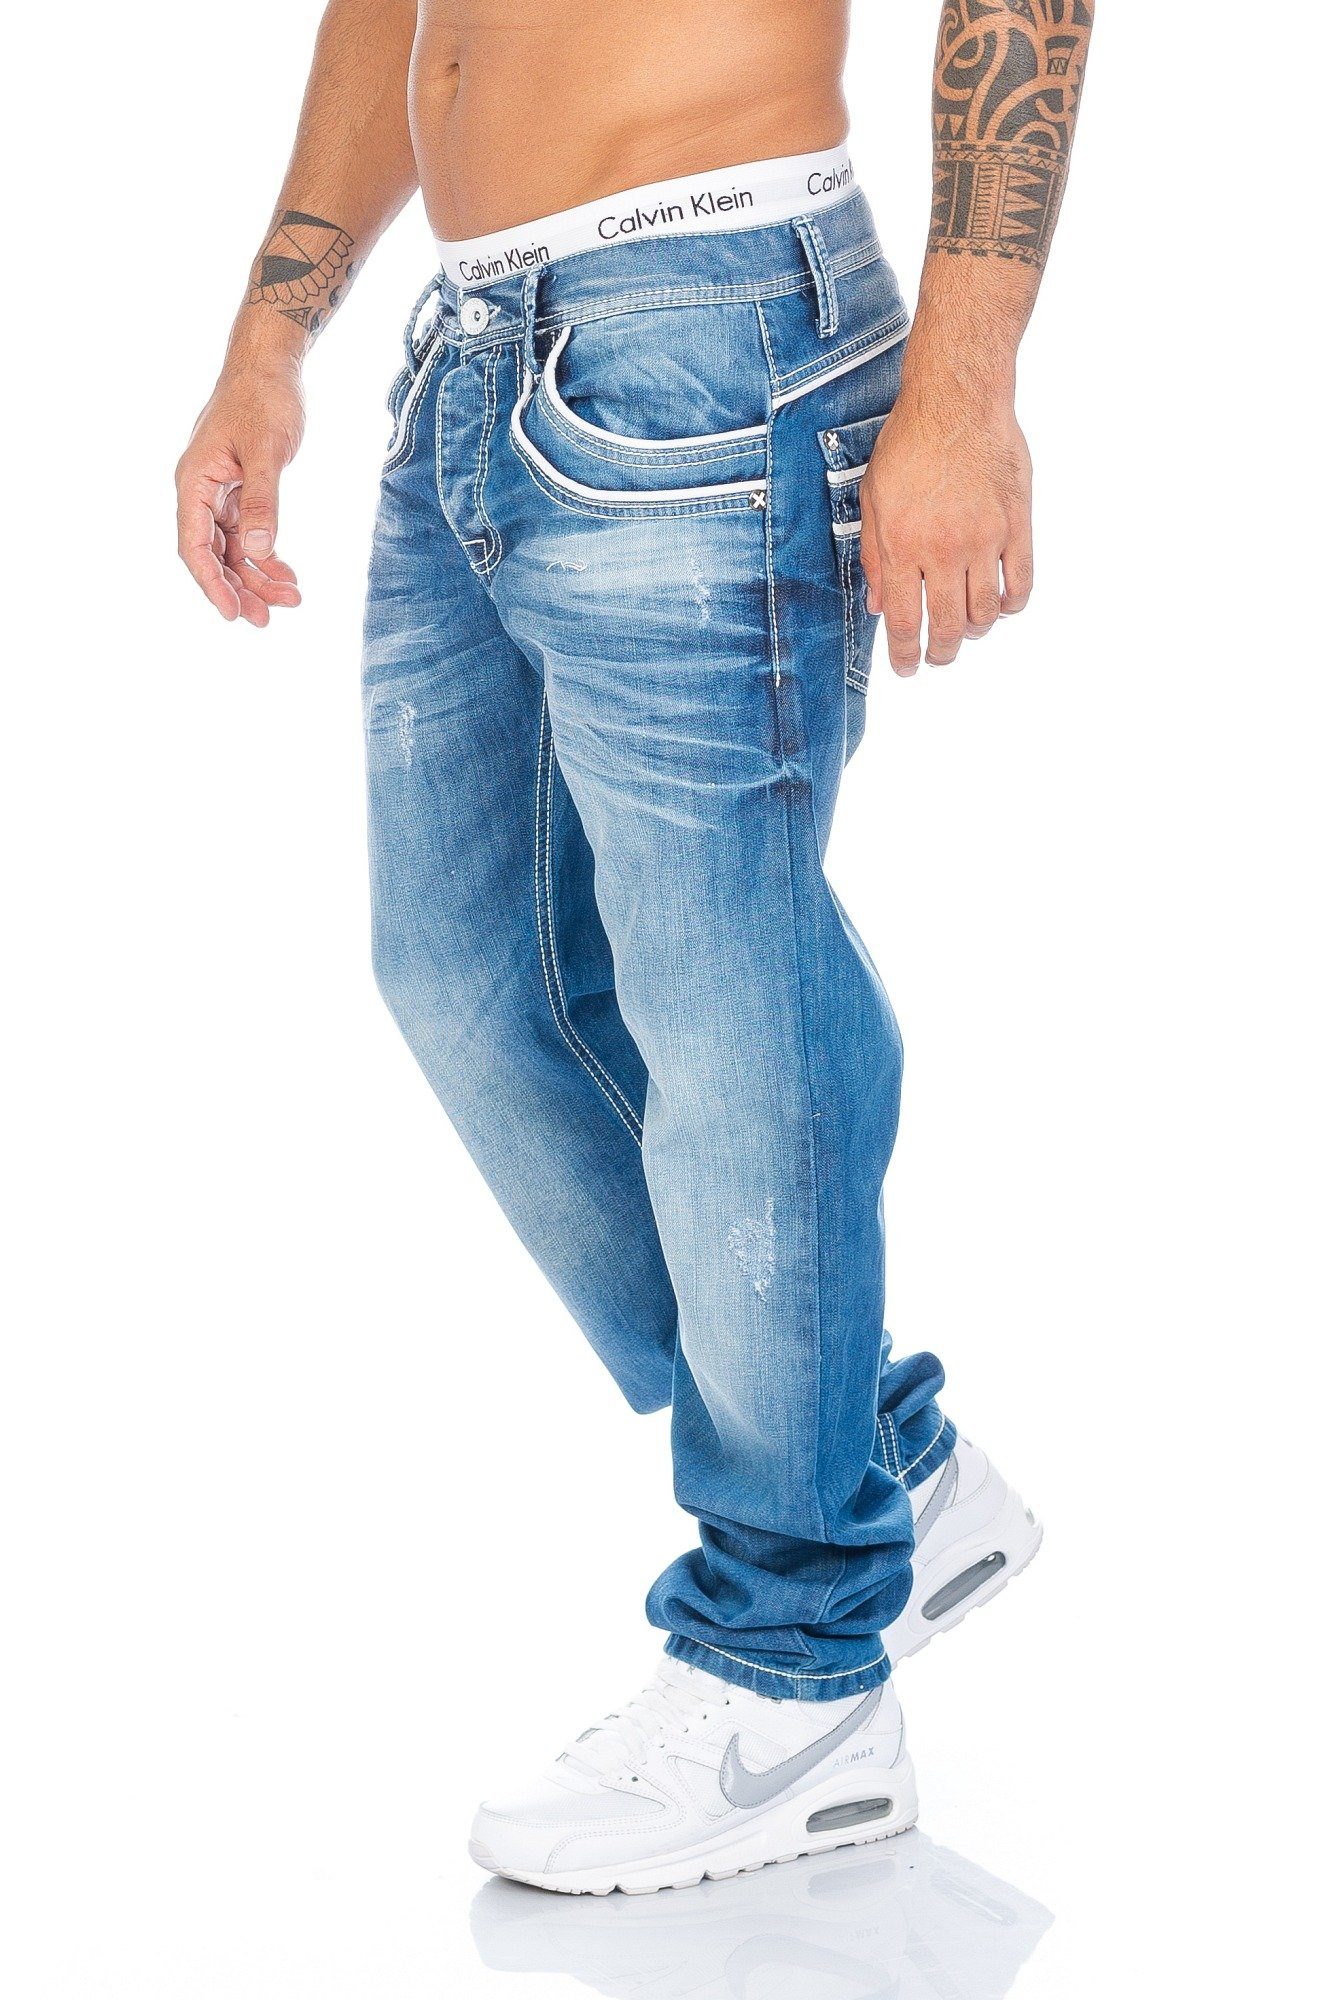 & Baxx Jeans Herren Applikationen Applikationen Regular-fit-Jeans Cipo mit weißen Jeans weißen Hose mit